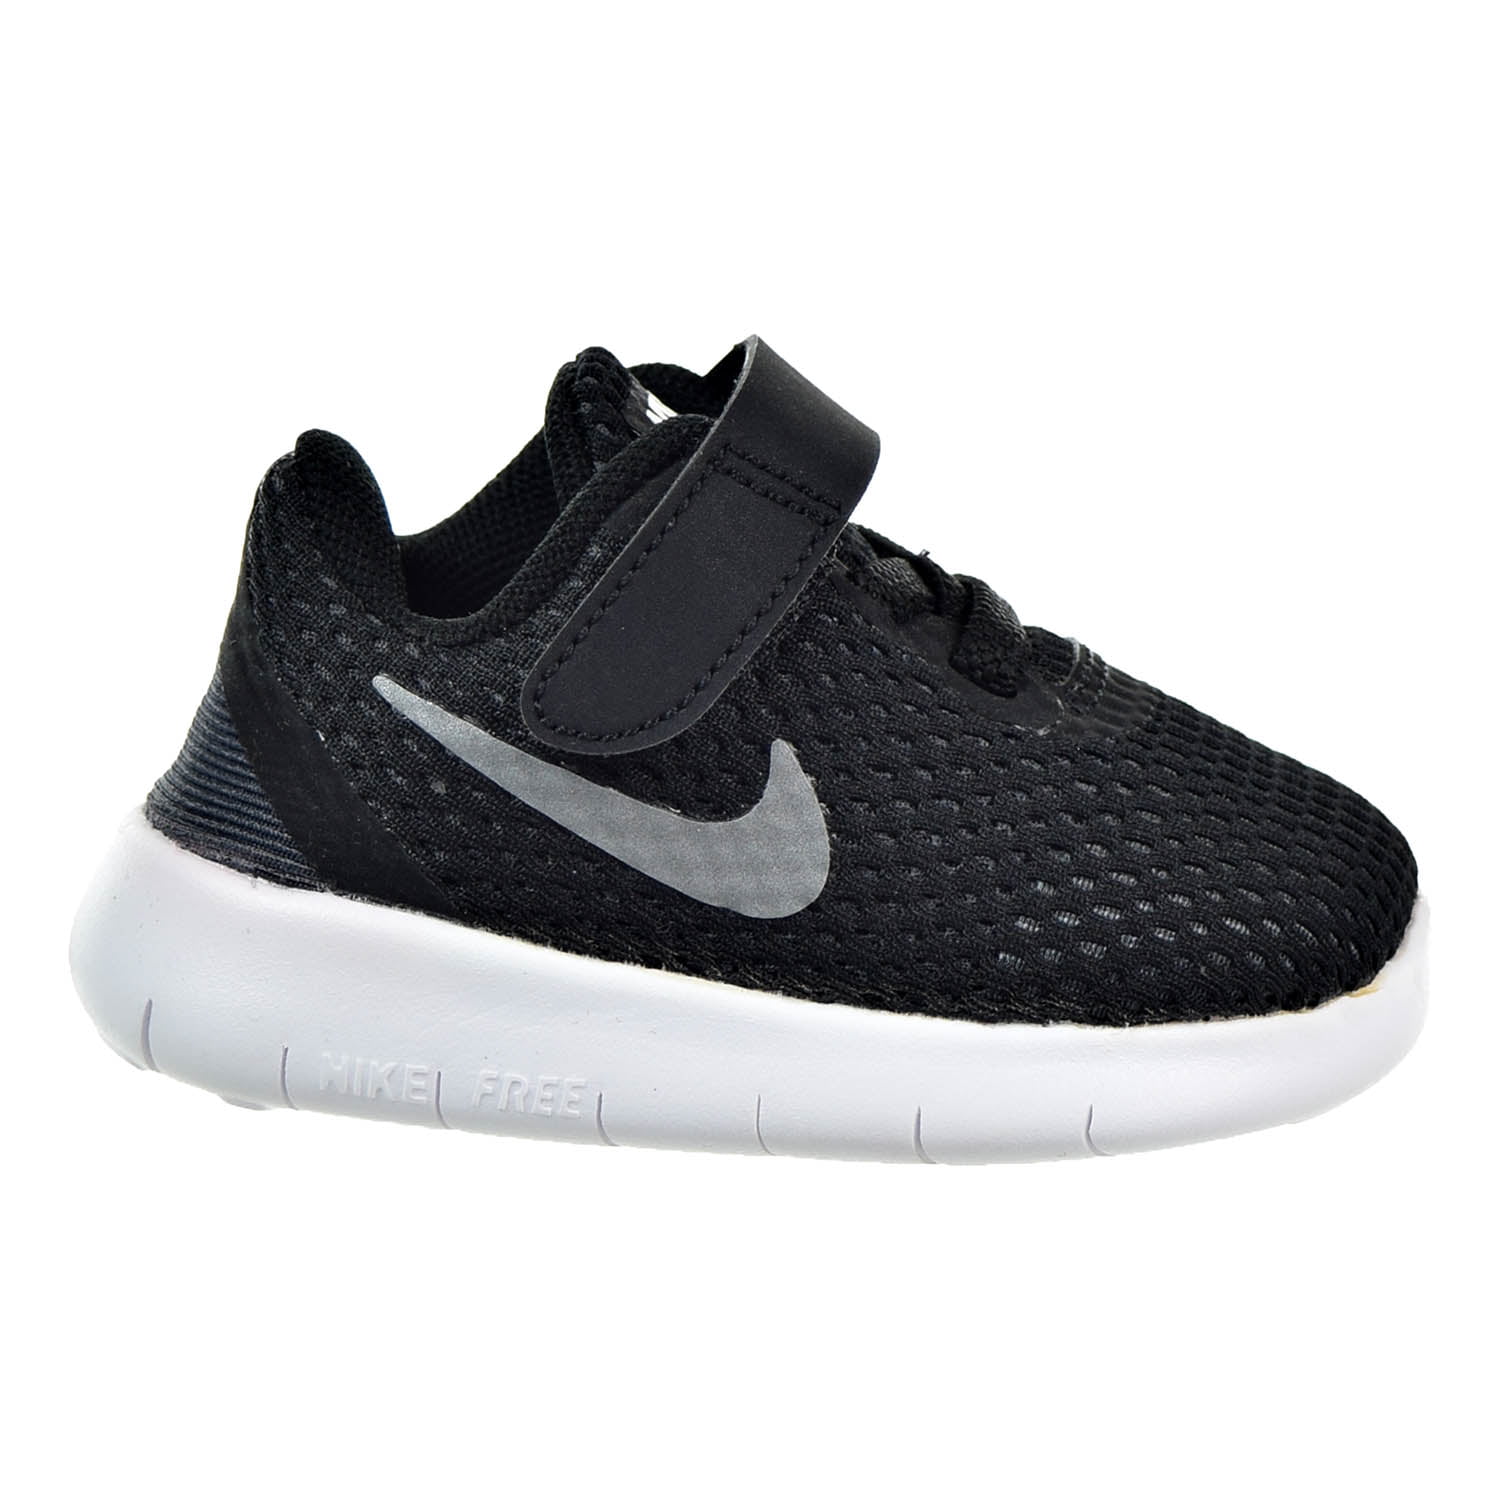 Nike Free RN (TDV) Toddler Shoes Black/Metallic Silver/Anthracite ...